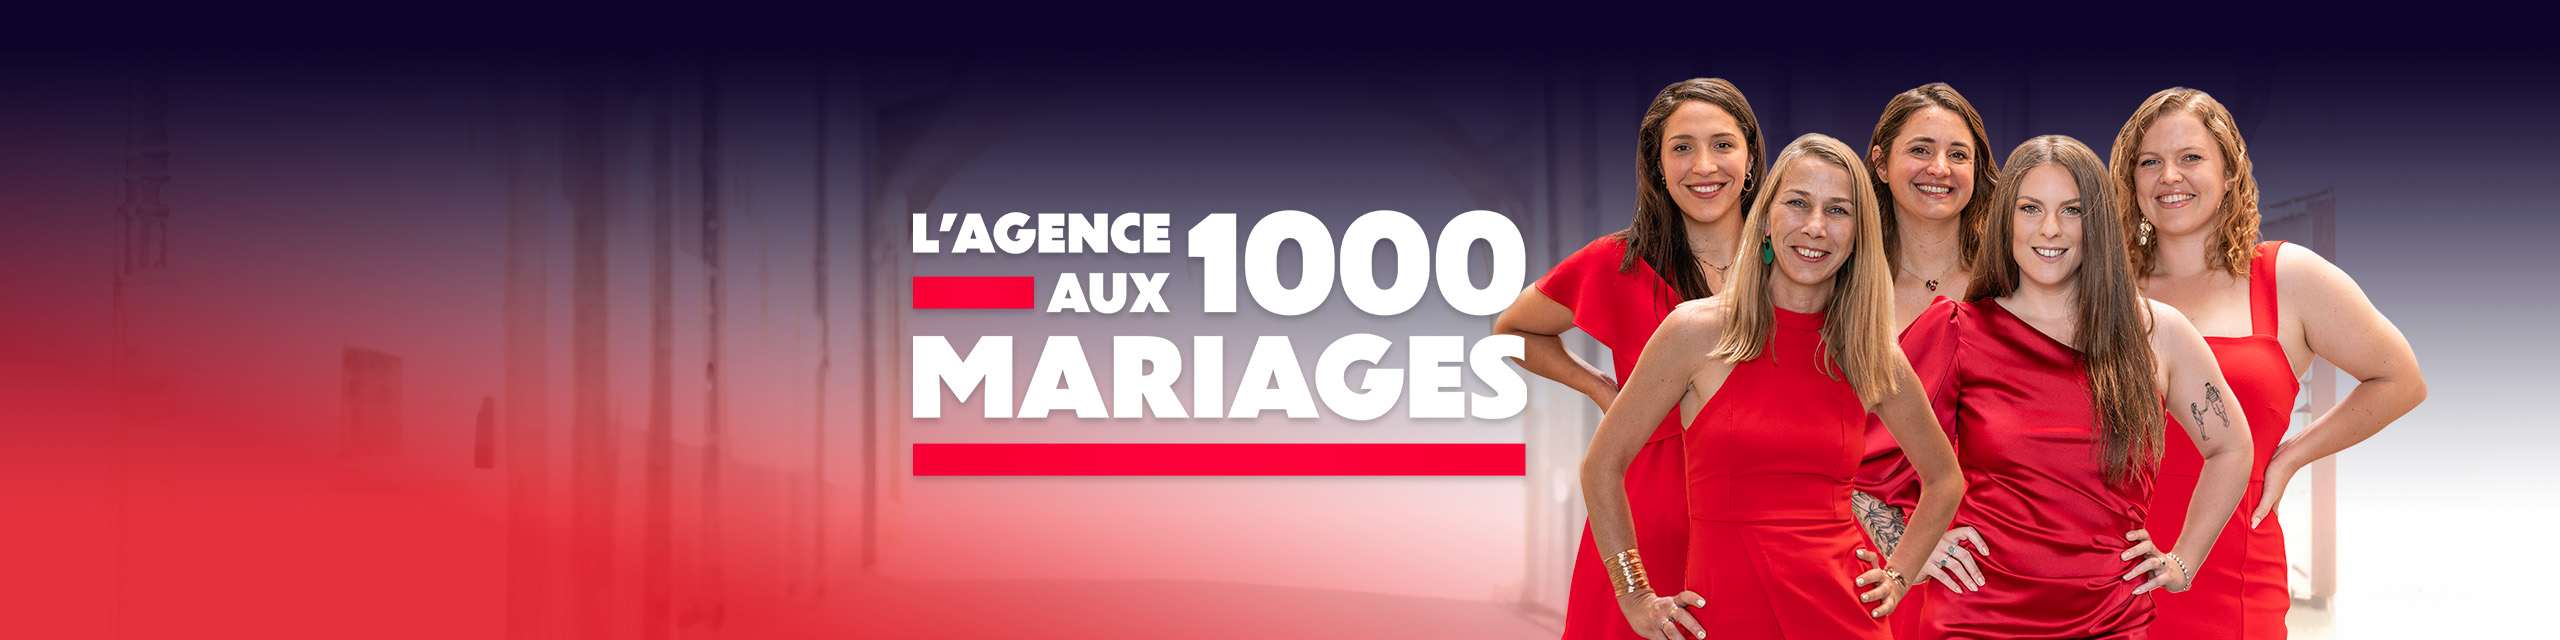 lagence-aux-1000-mariages-tout-savoir-sur-la-nouvelle-emission-diffusee-par-6ter-le-30-novembre-2023